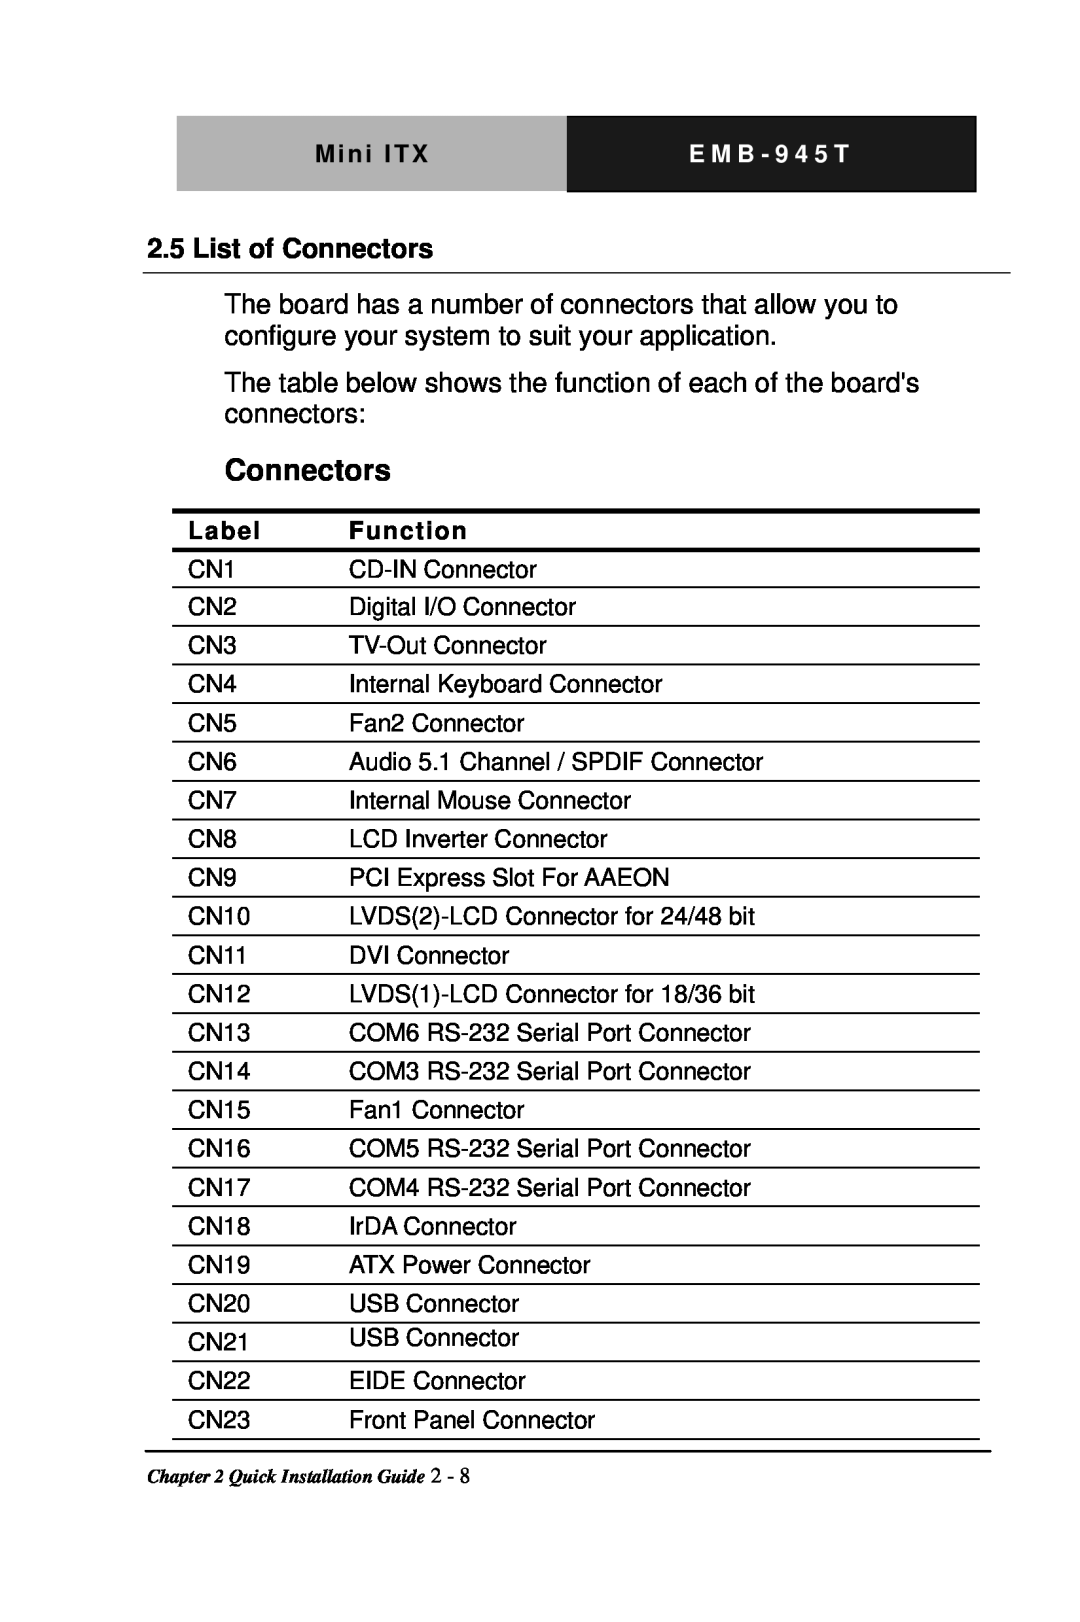 Intel EMB-945T manual List of Connectors 